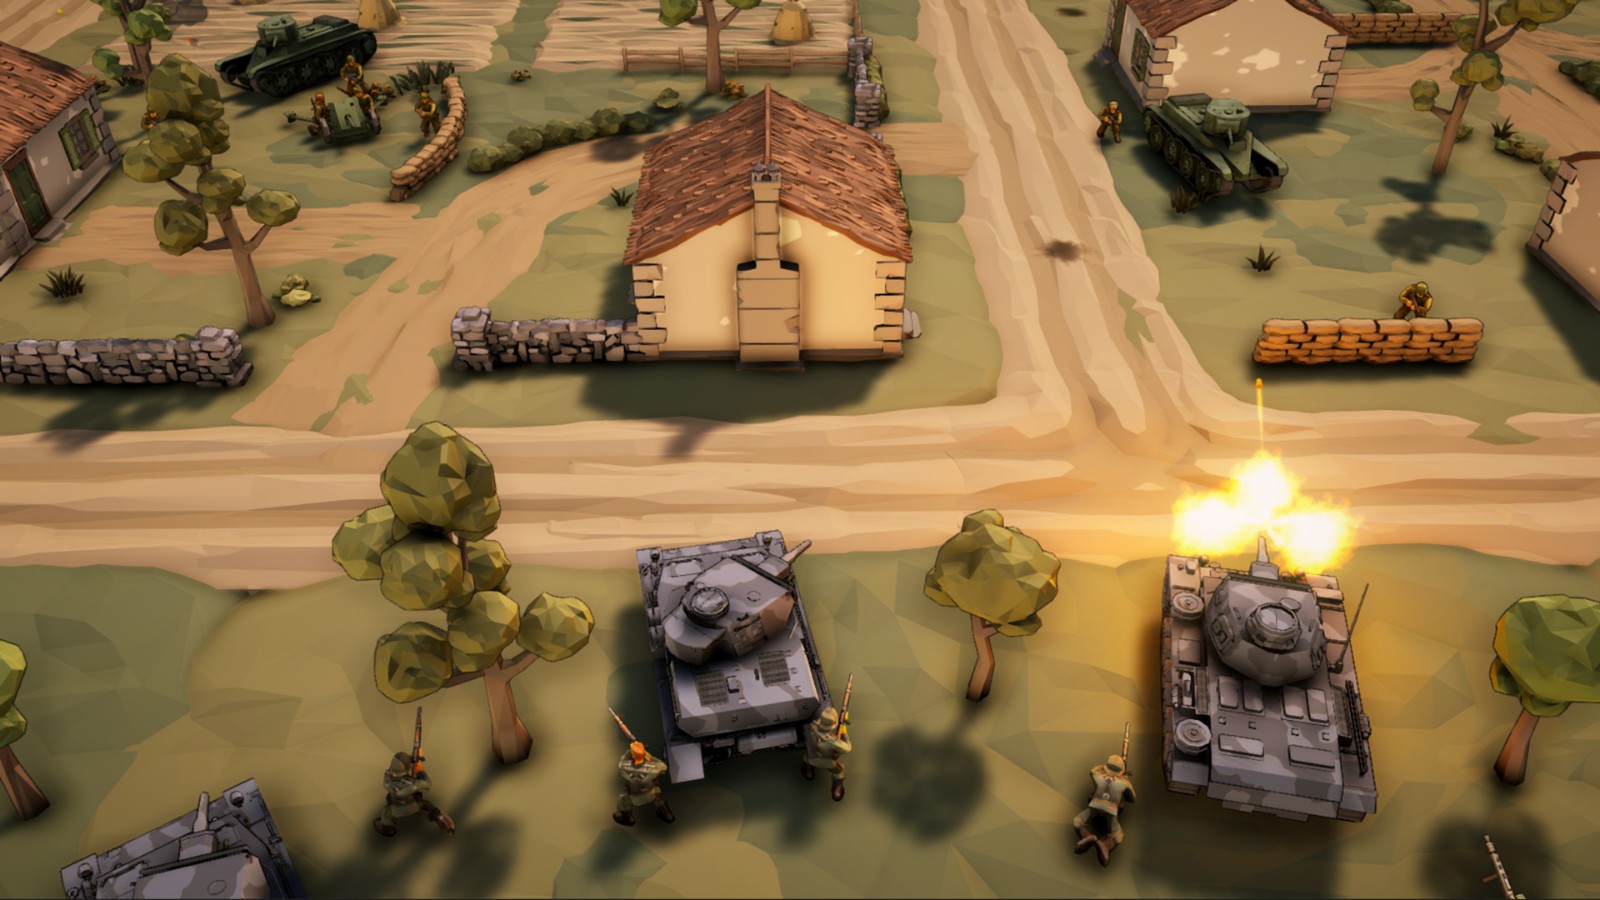 国产二战独立策略游戏《卫国战争》上架Steam商城